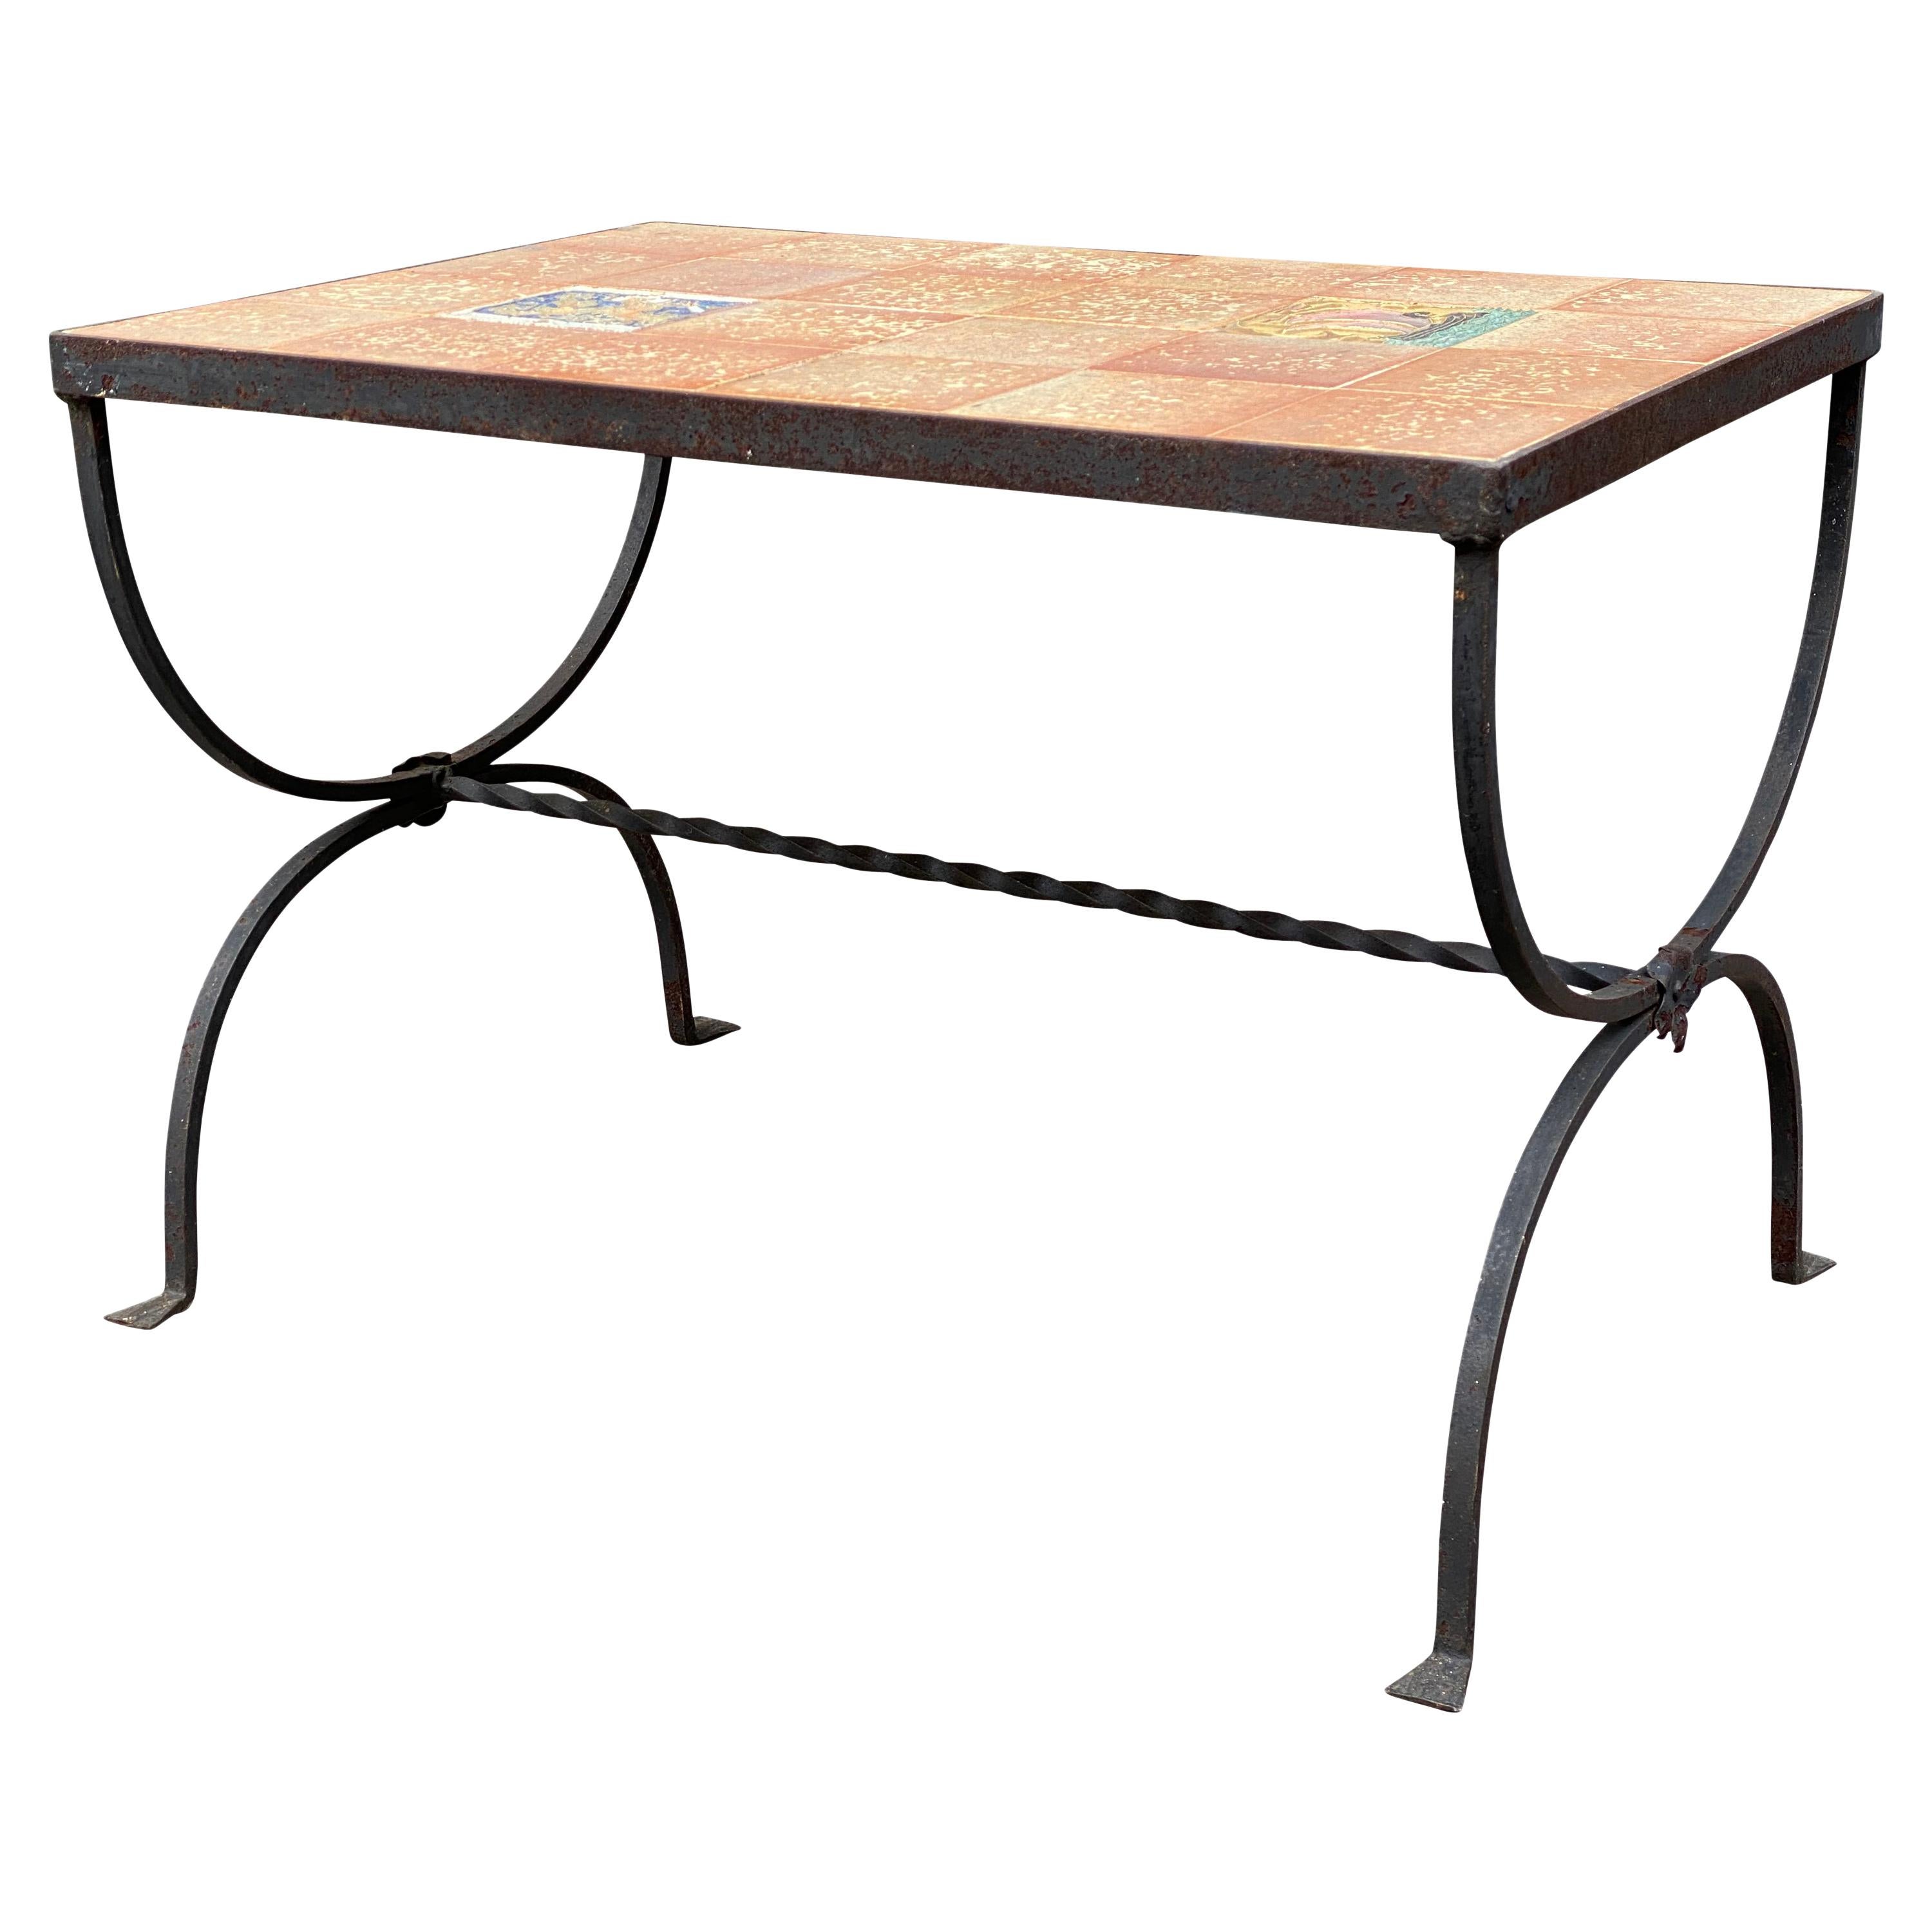 Table en fer forgé avec plateau en carreaux